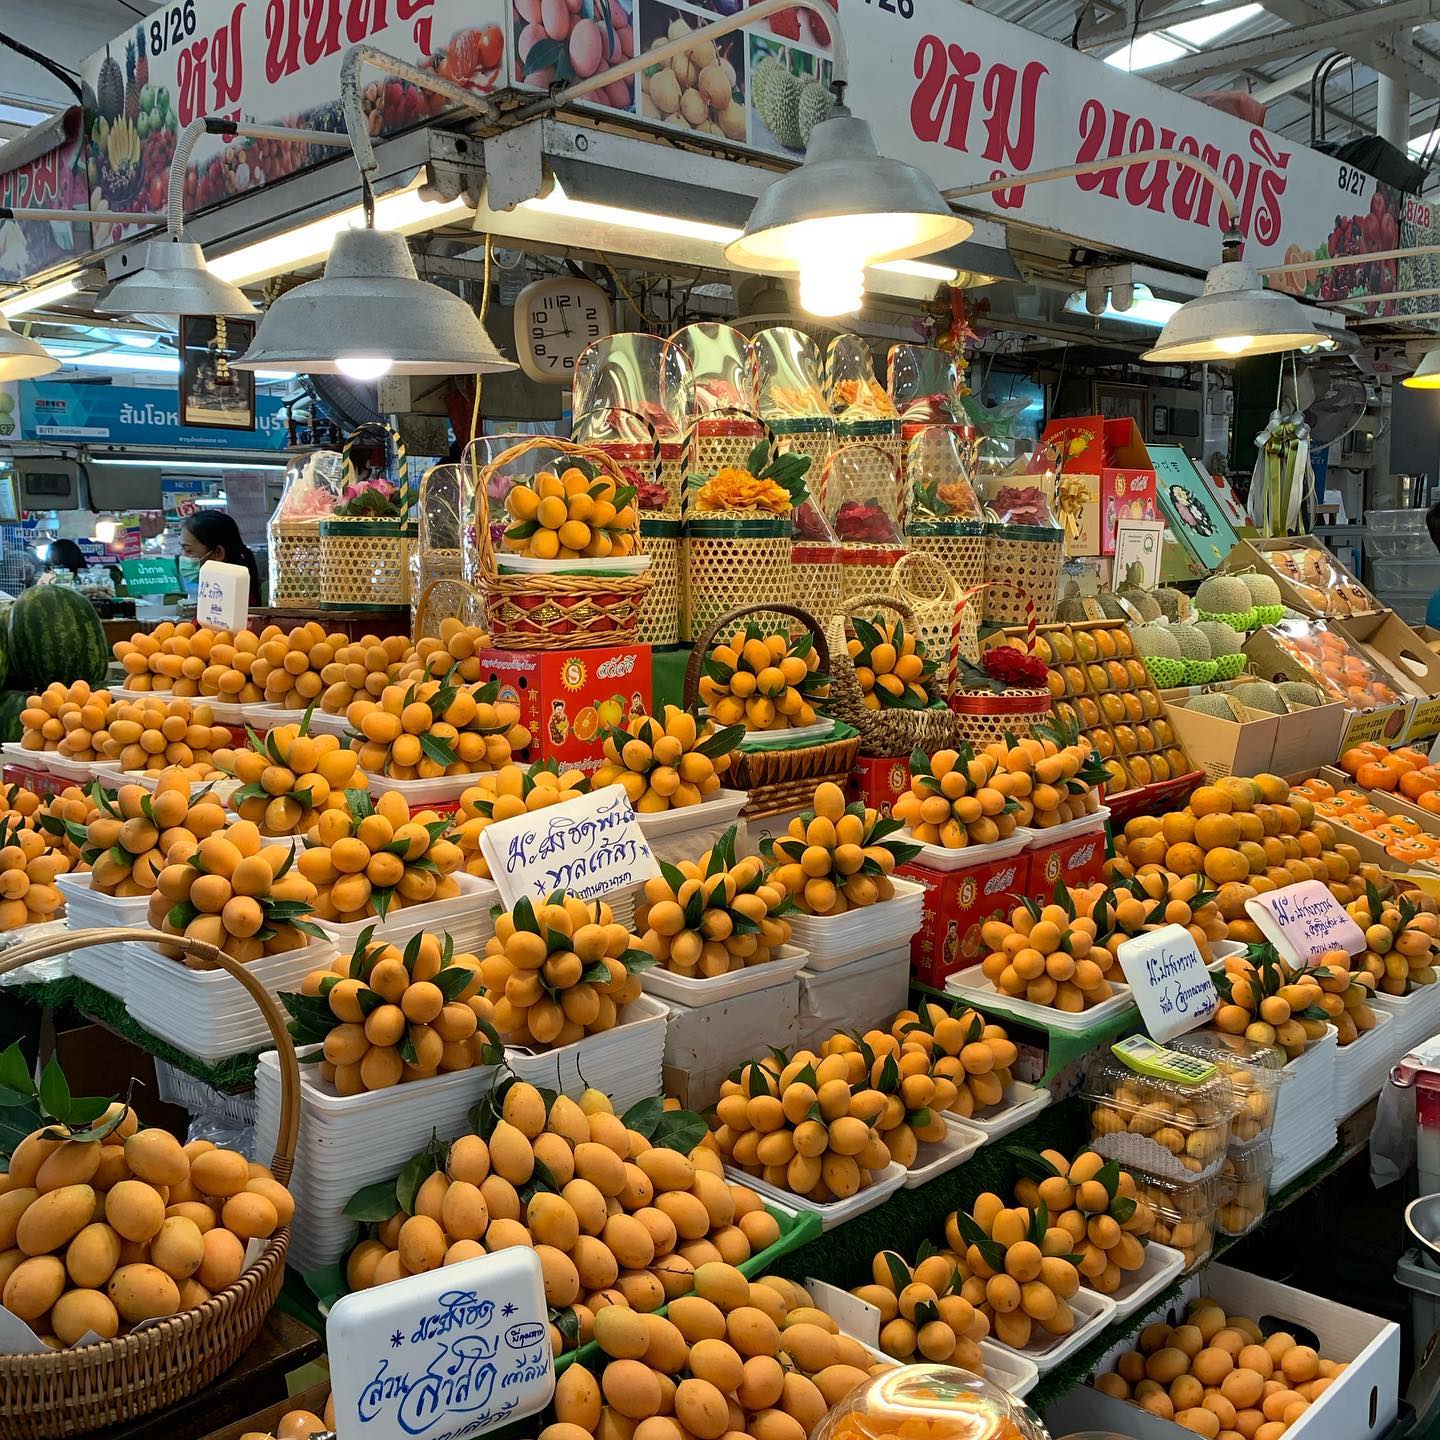 Chợ Or Tor Kor nổi tiếng với các loại trái cây tươi ngon - Ảnh: dkalayanee